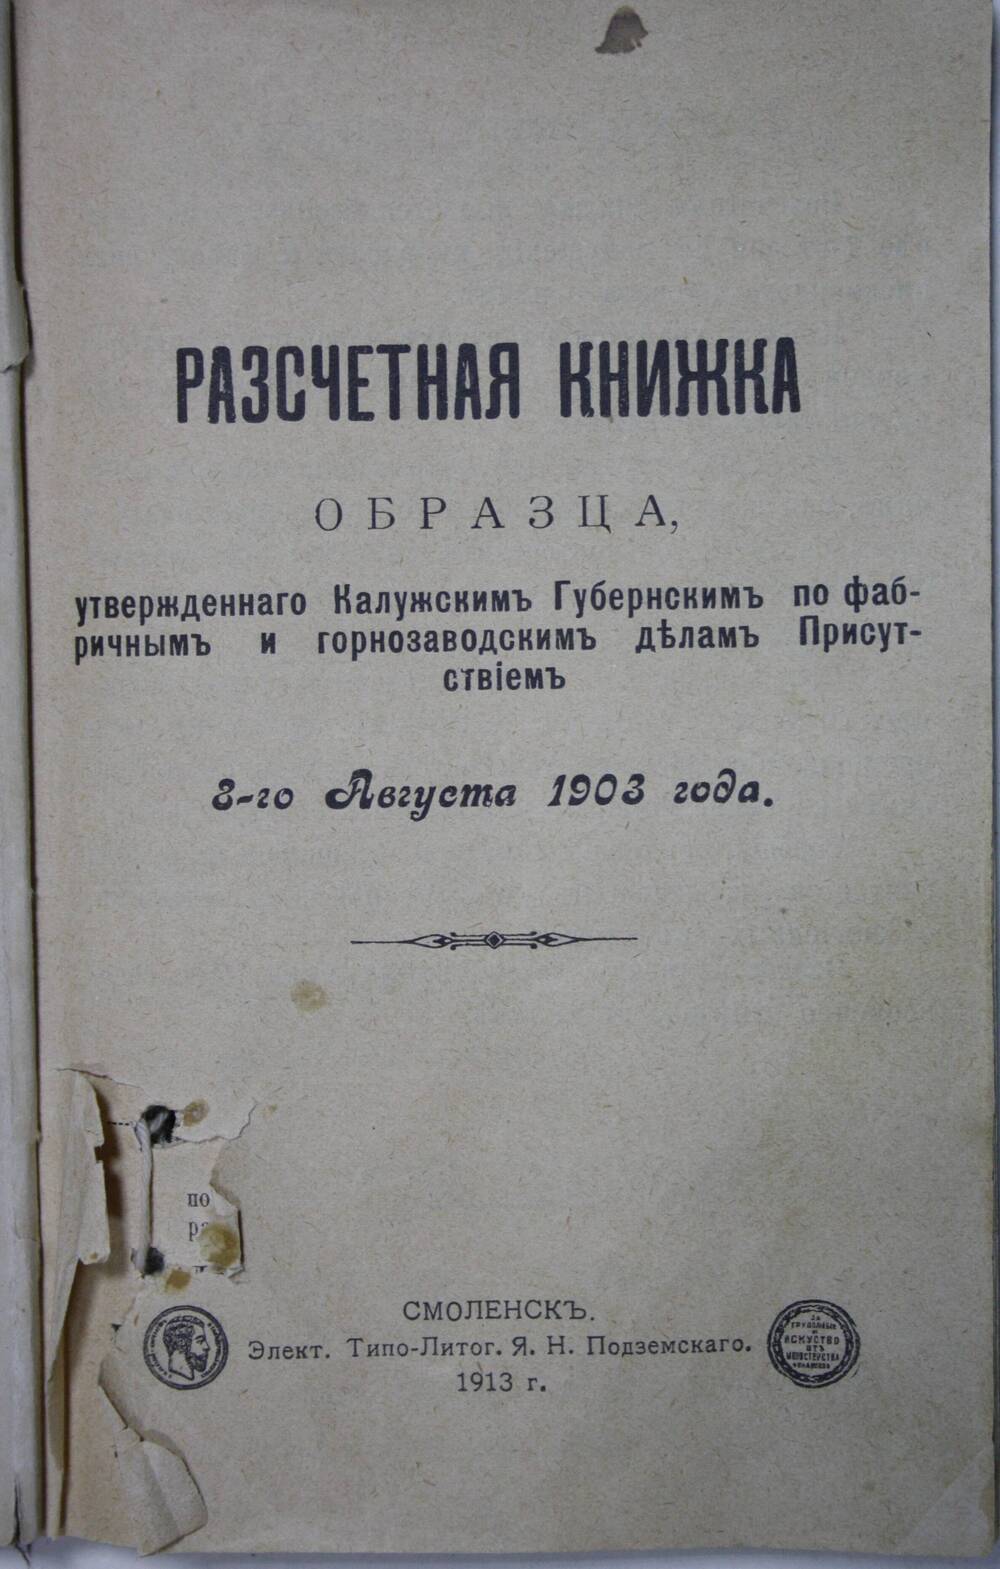 Расчетная книжка образца, утвержденного Калужским губернским по фабричным и горнозаводским делам Присутствием 3 августа 1903 года.